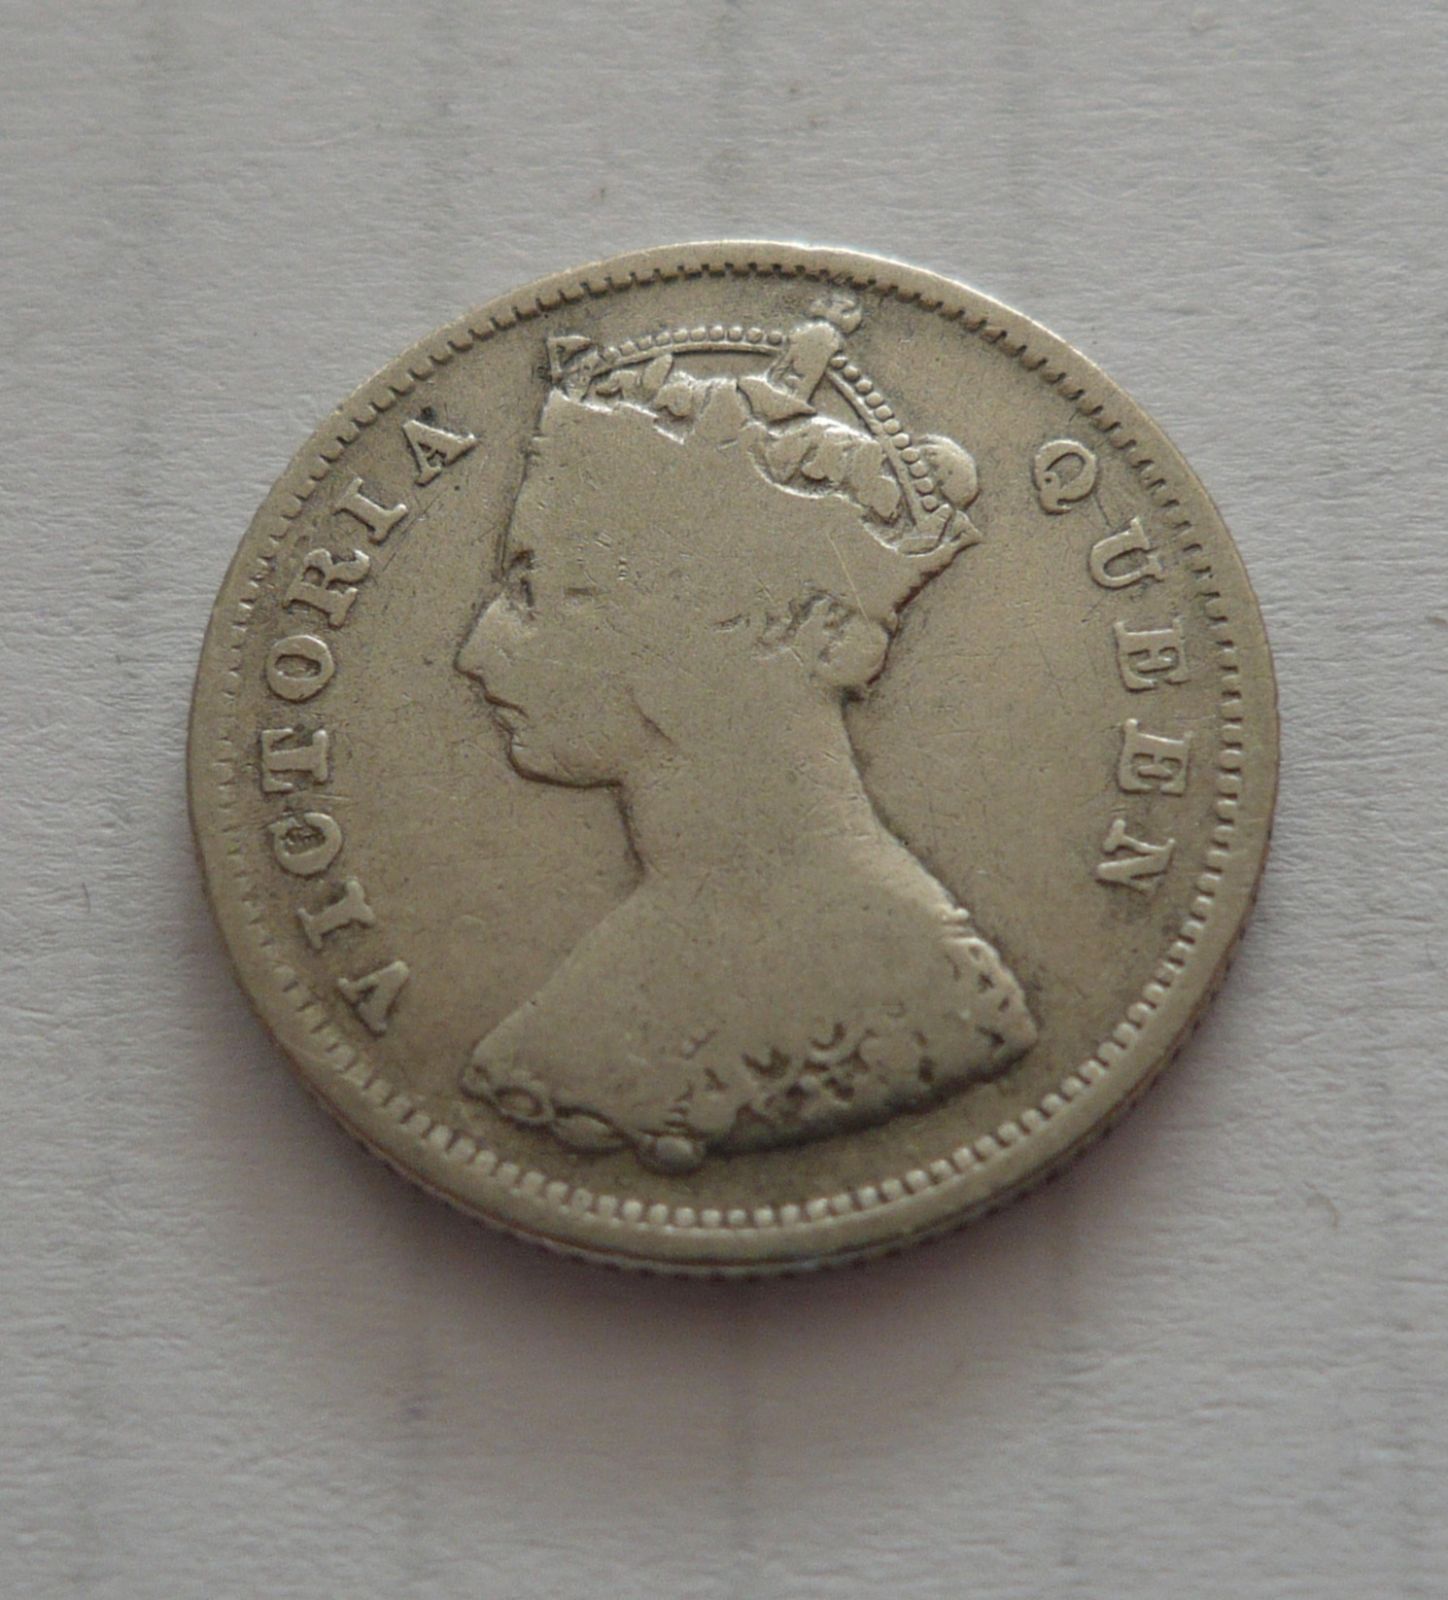 10 Cent, 1899, Viktorie, Hong Kong